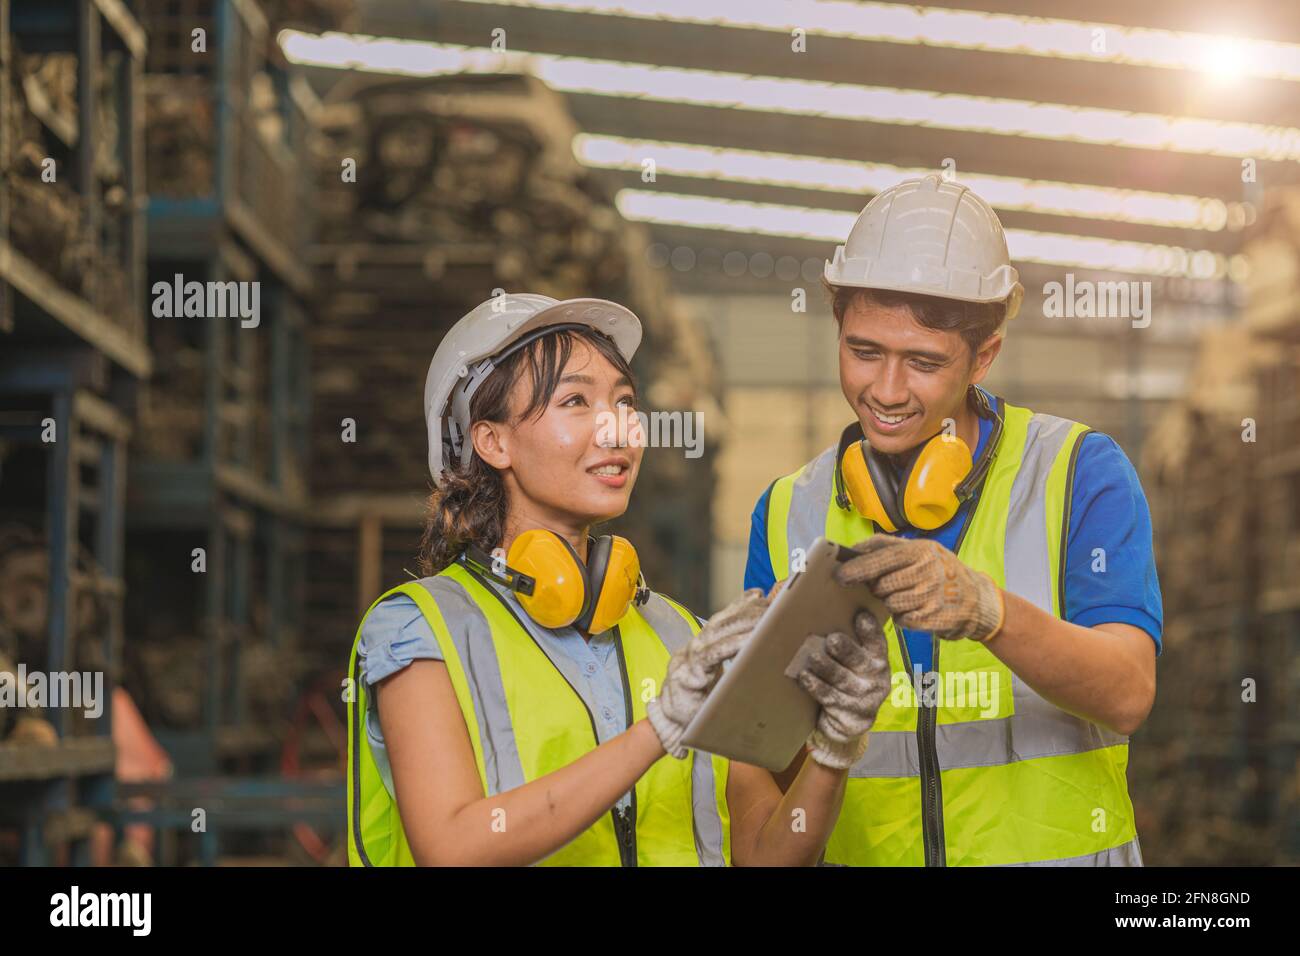 Asiatische junge Männer und Frauen, die Teamingenieure arbeiten, unterstützen gemeinsam mit einem glücklichen Lächeln auf dem Tablet, um in der Fabrikindustrie zu arbeiten. Stockfoto